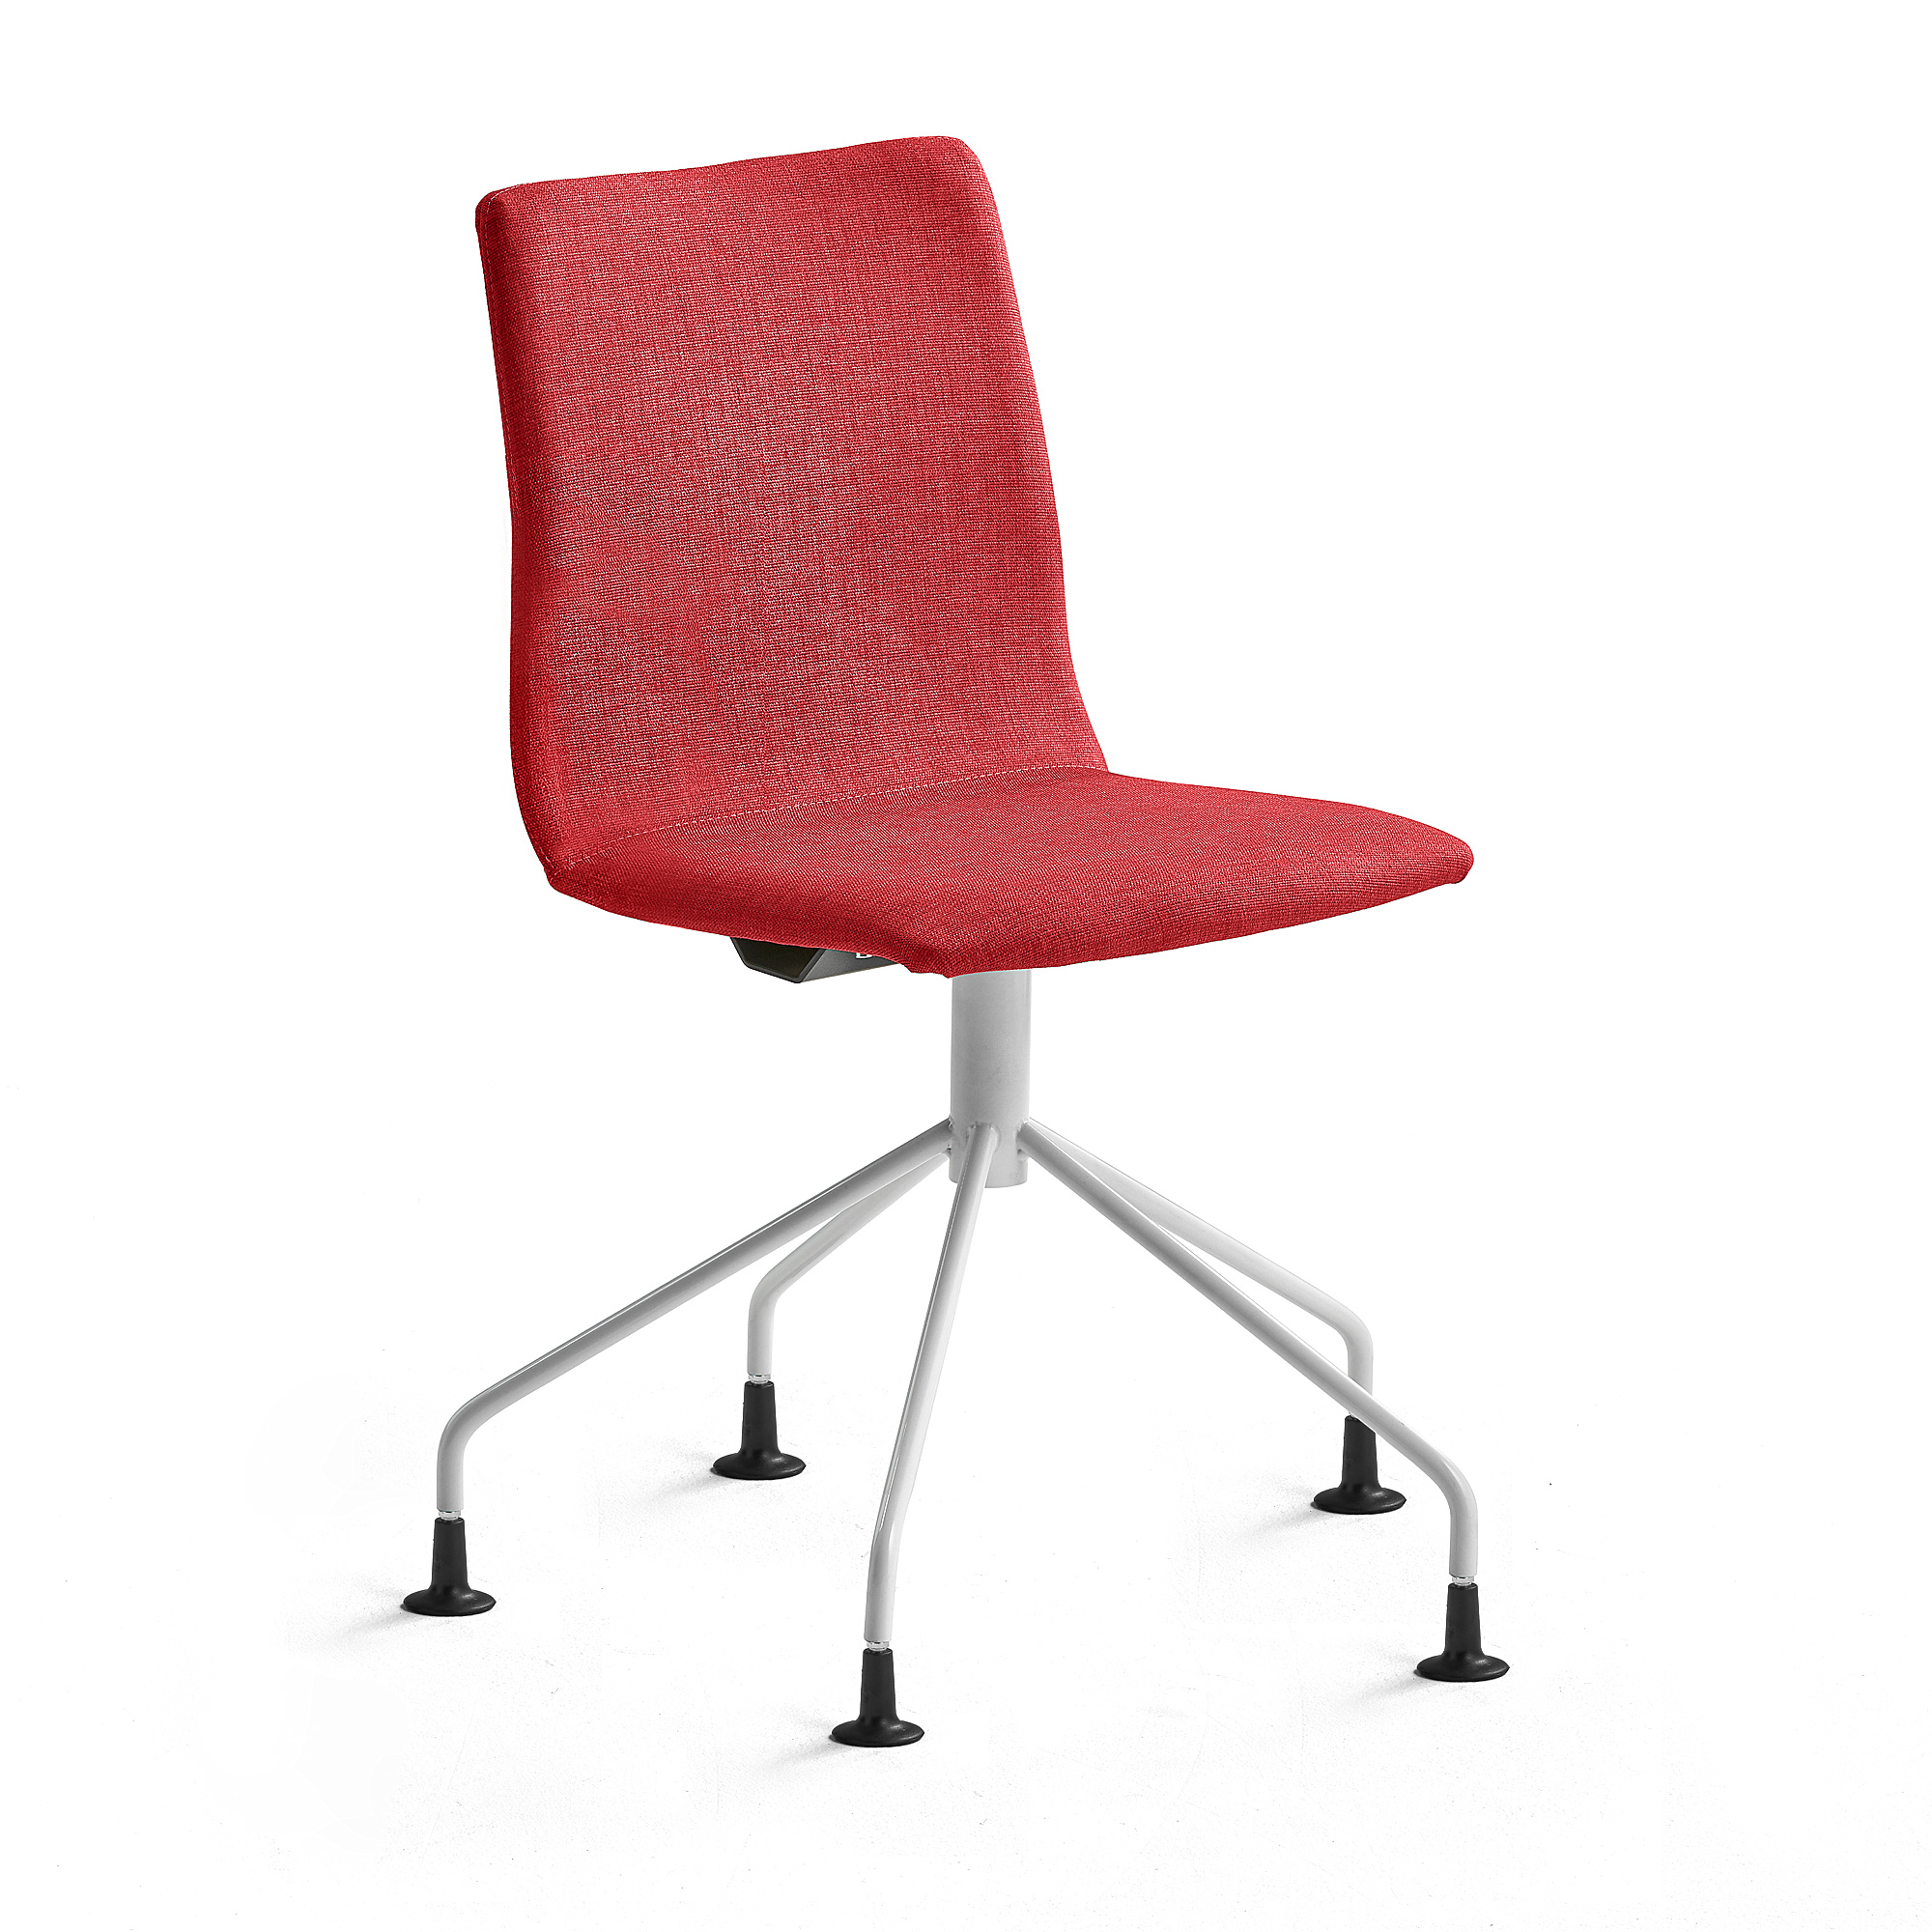 Konferenční židle OTTAWA, podnož pavouk, červená, bílý rám